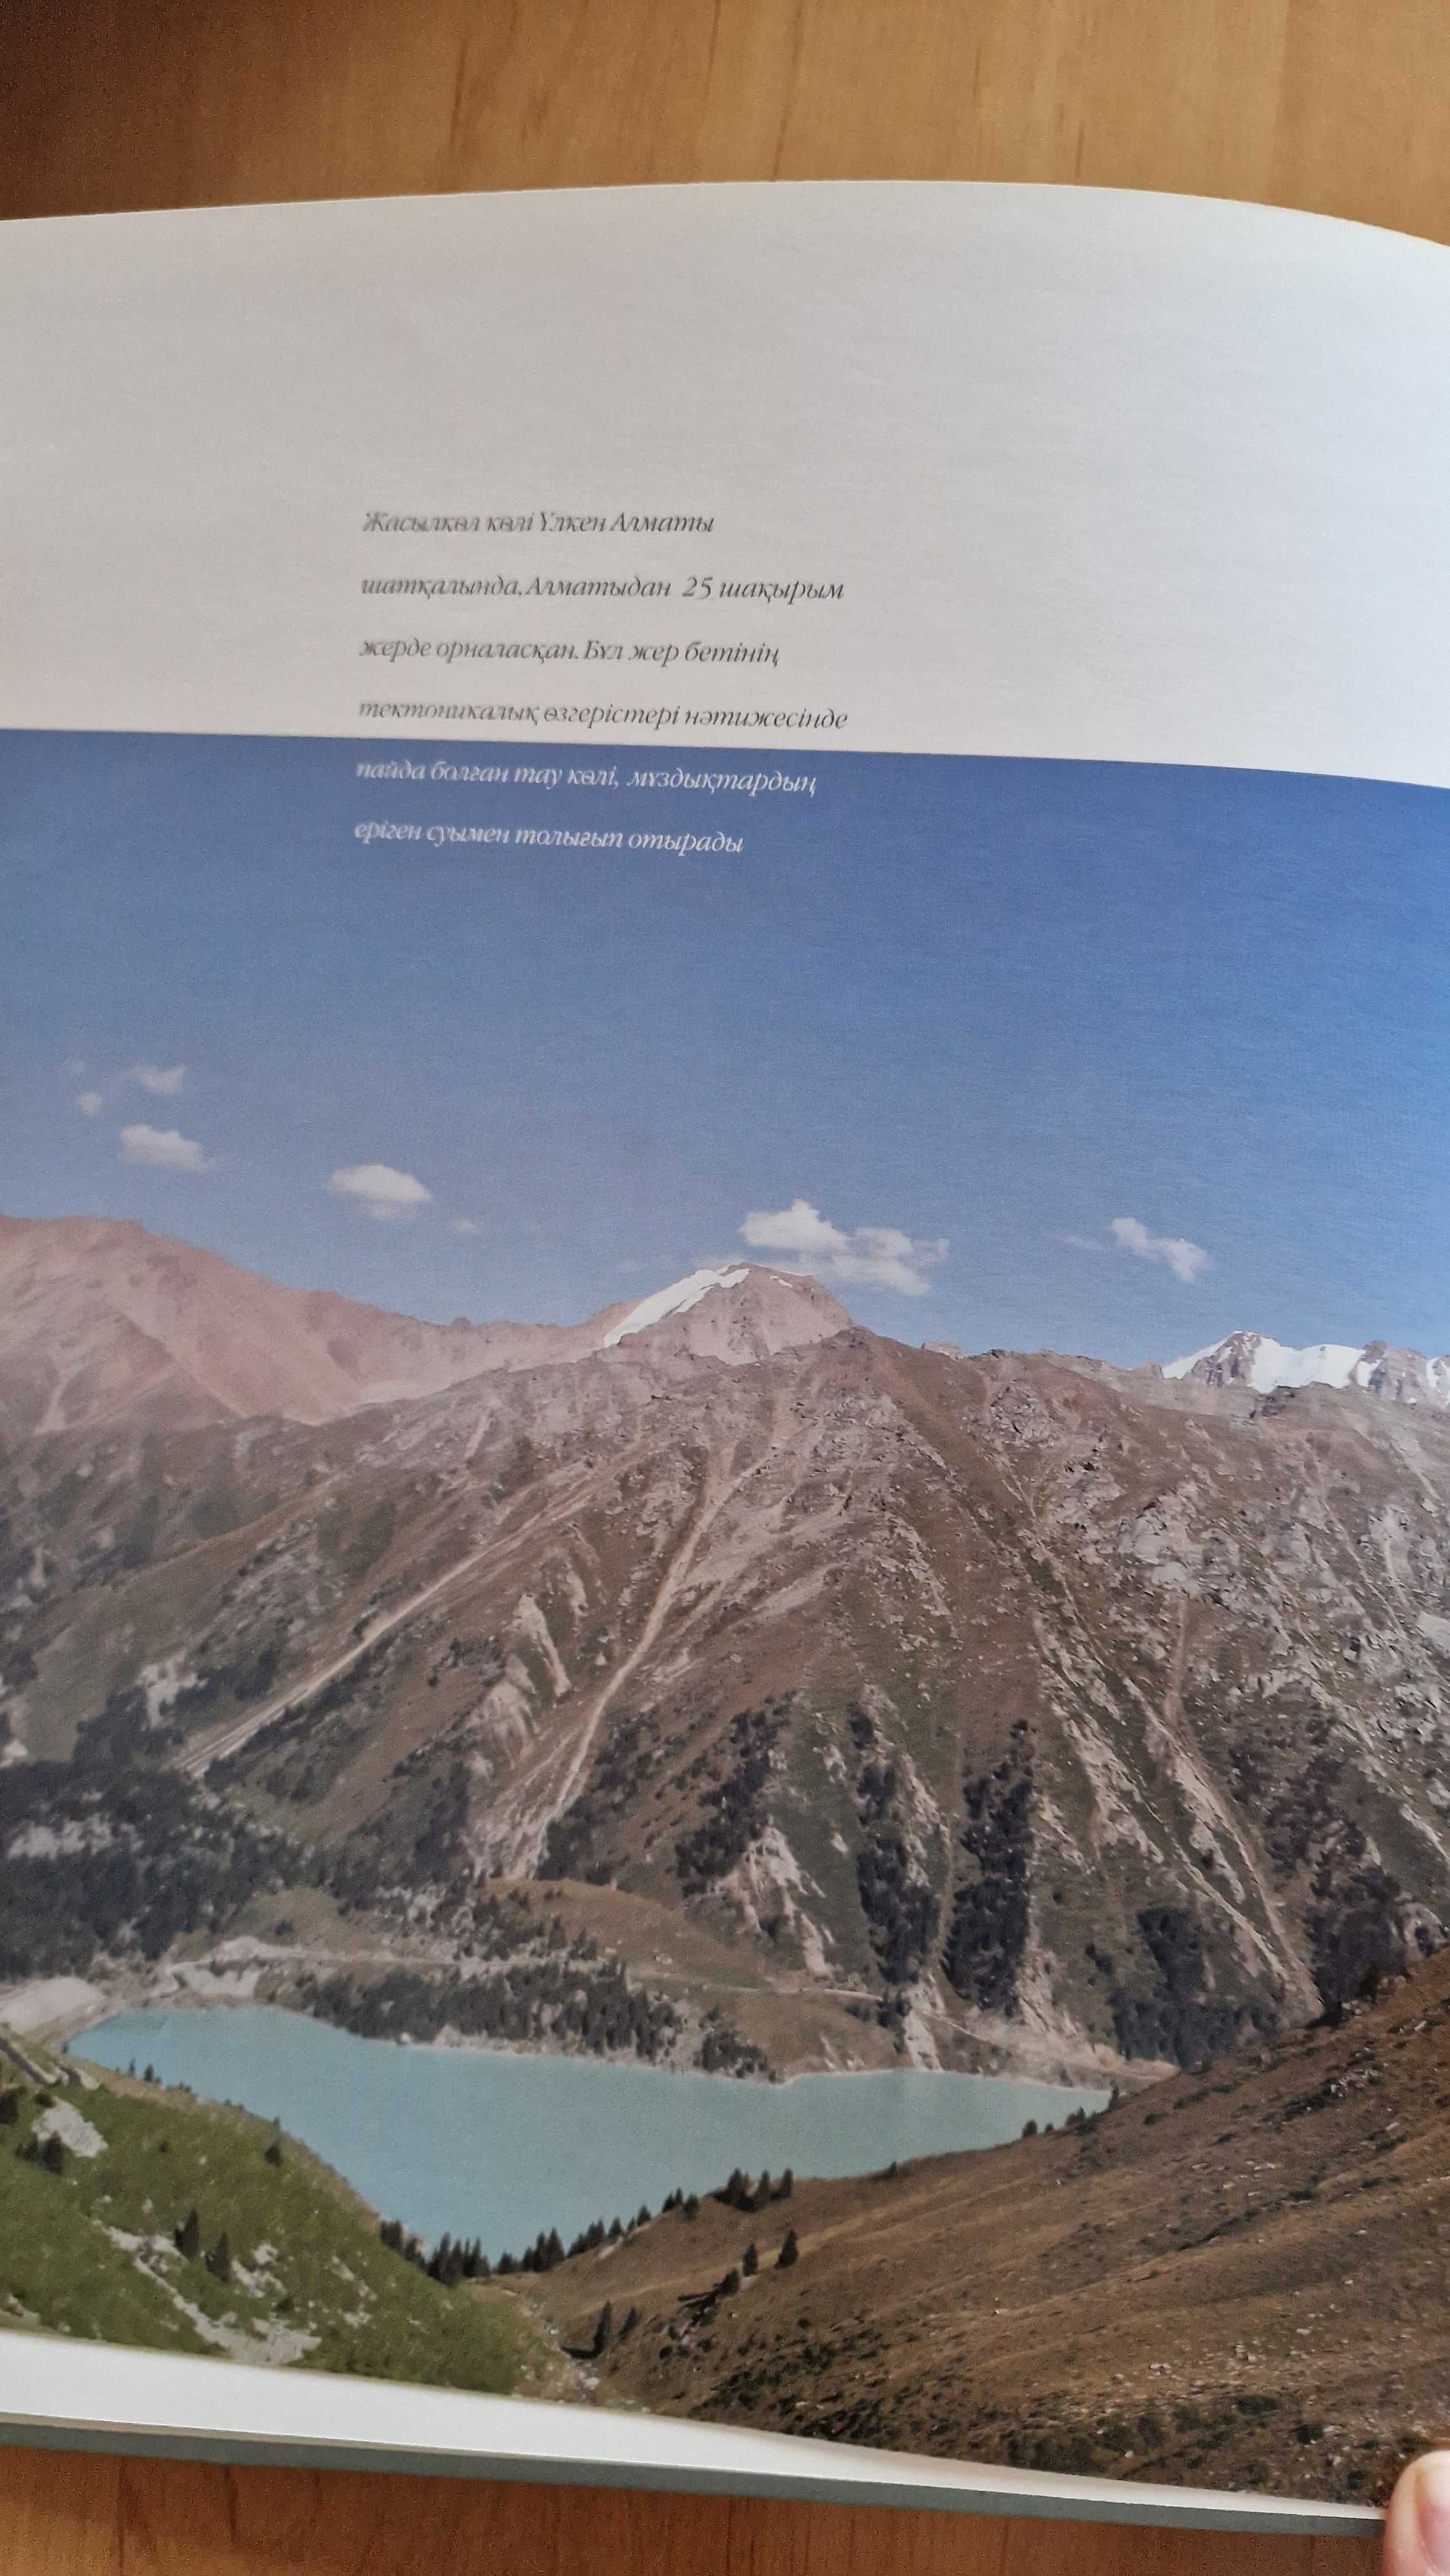 Книга Ландшафты Казахстана